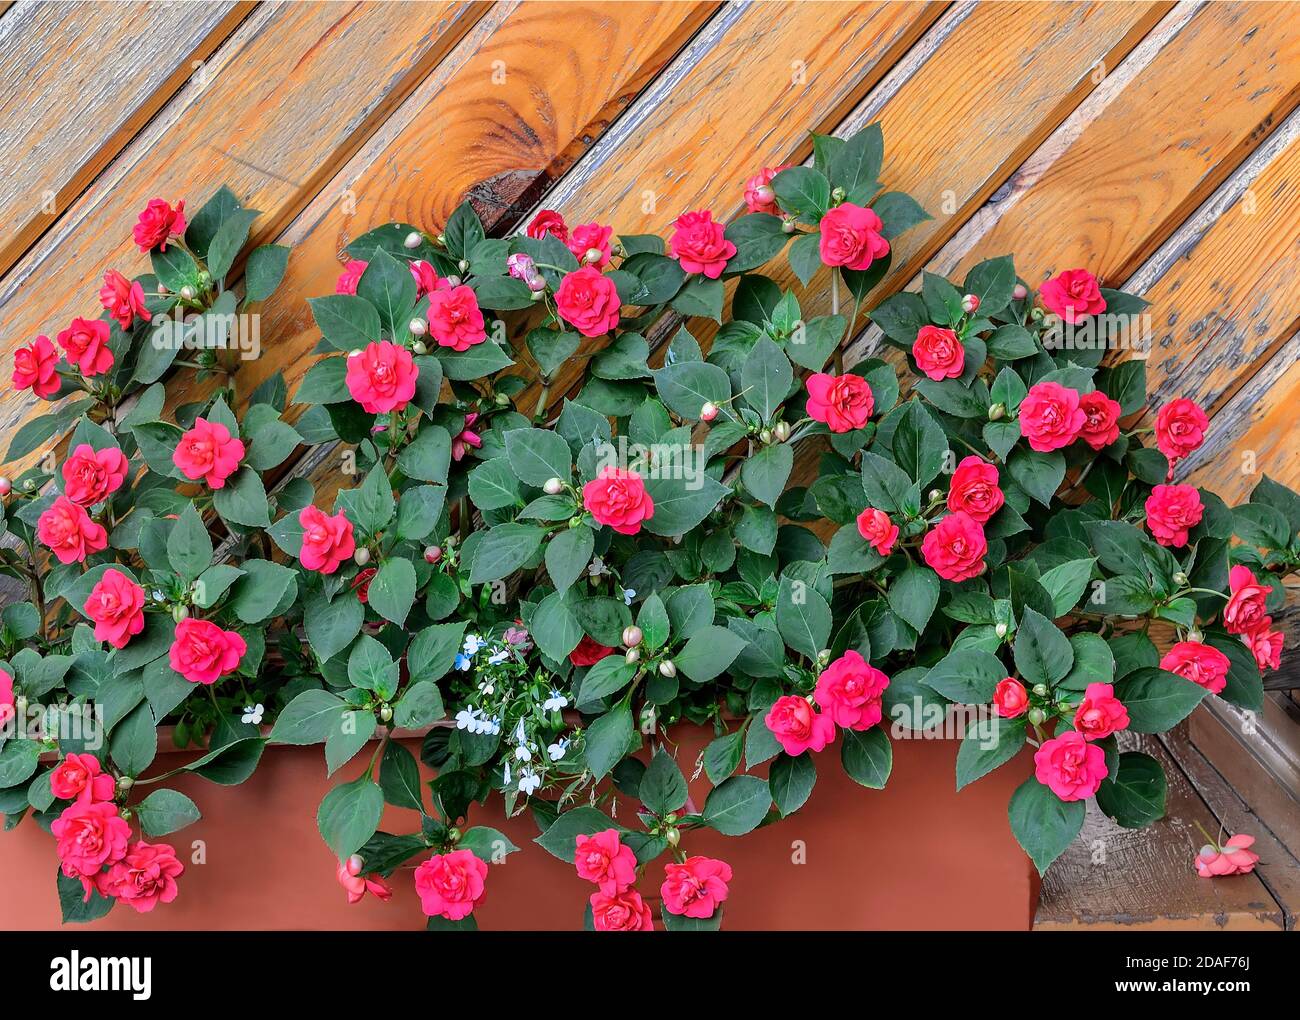 Fleurs de baumes rouges en terry en pot dans le jardin près d'un mur en bois. Impatiens balsamina, également connu sous le nom de Lizzie occupé, sultana ou impatiens walleriana. Floricul Banque D'Images